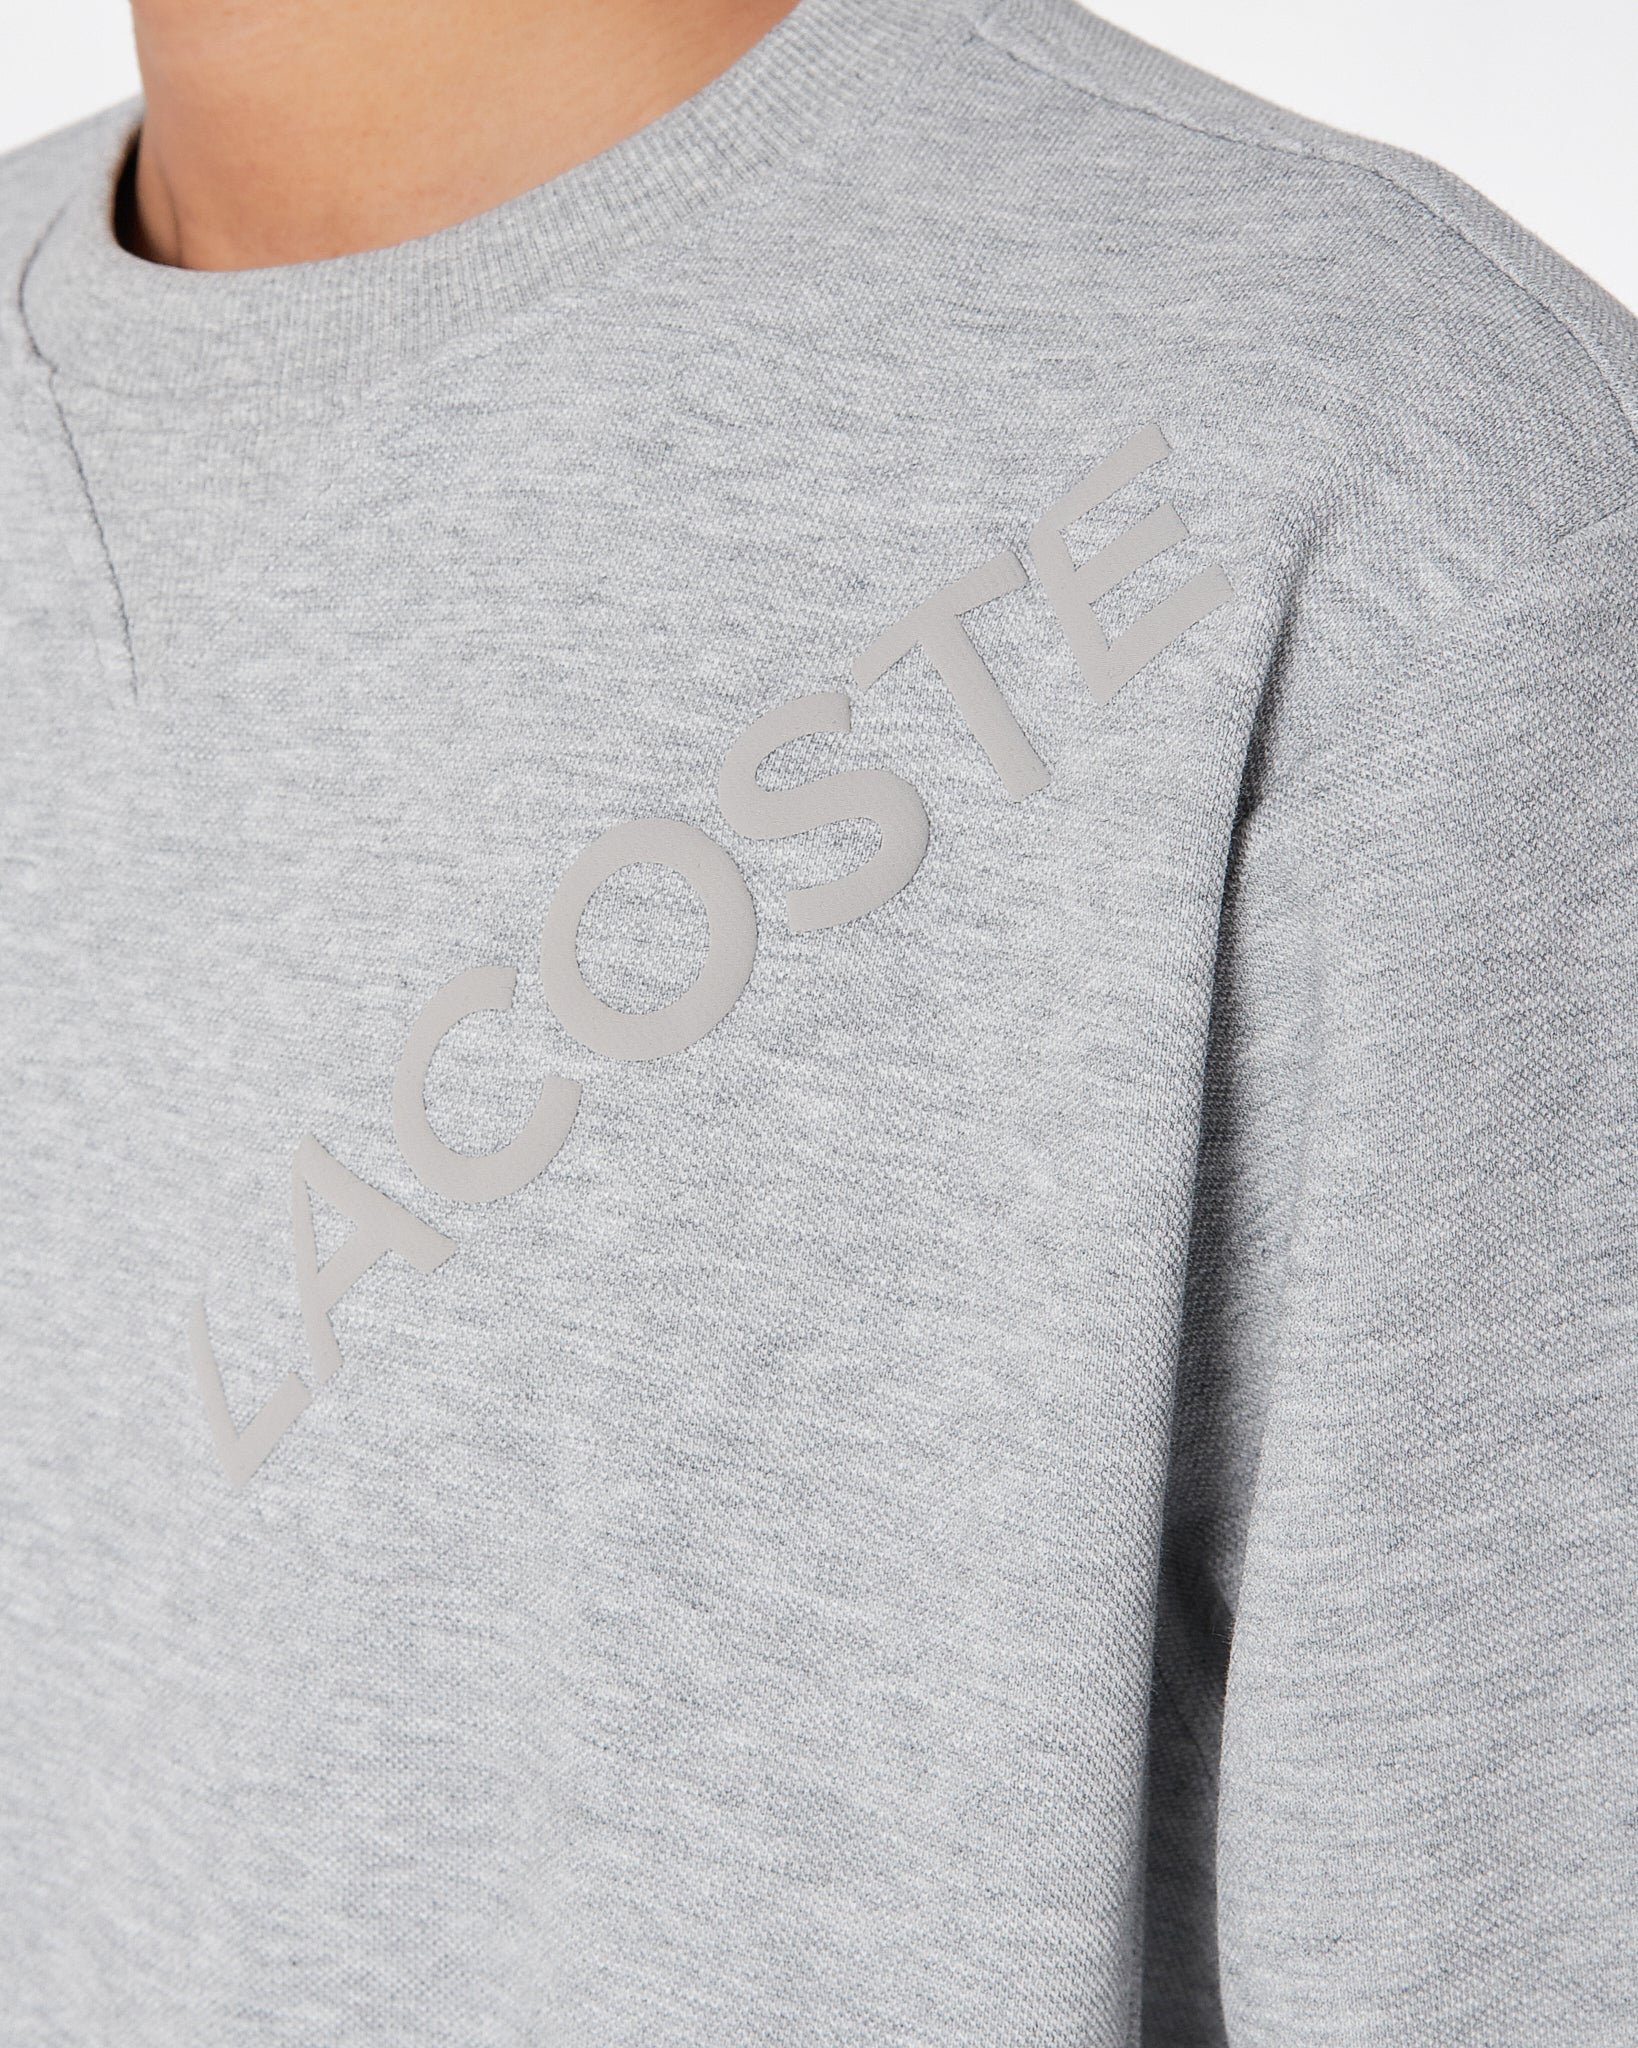 LAC Plain Color Men Grey Sweater 22.90